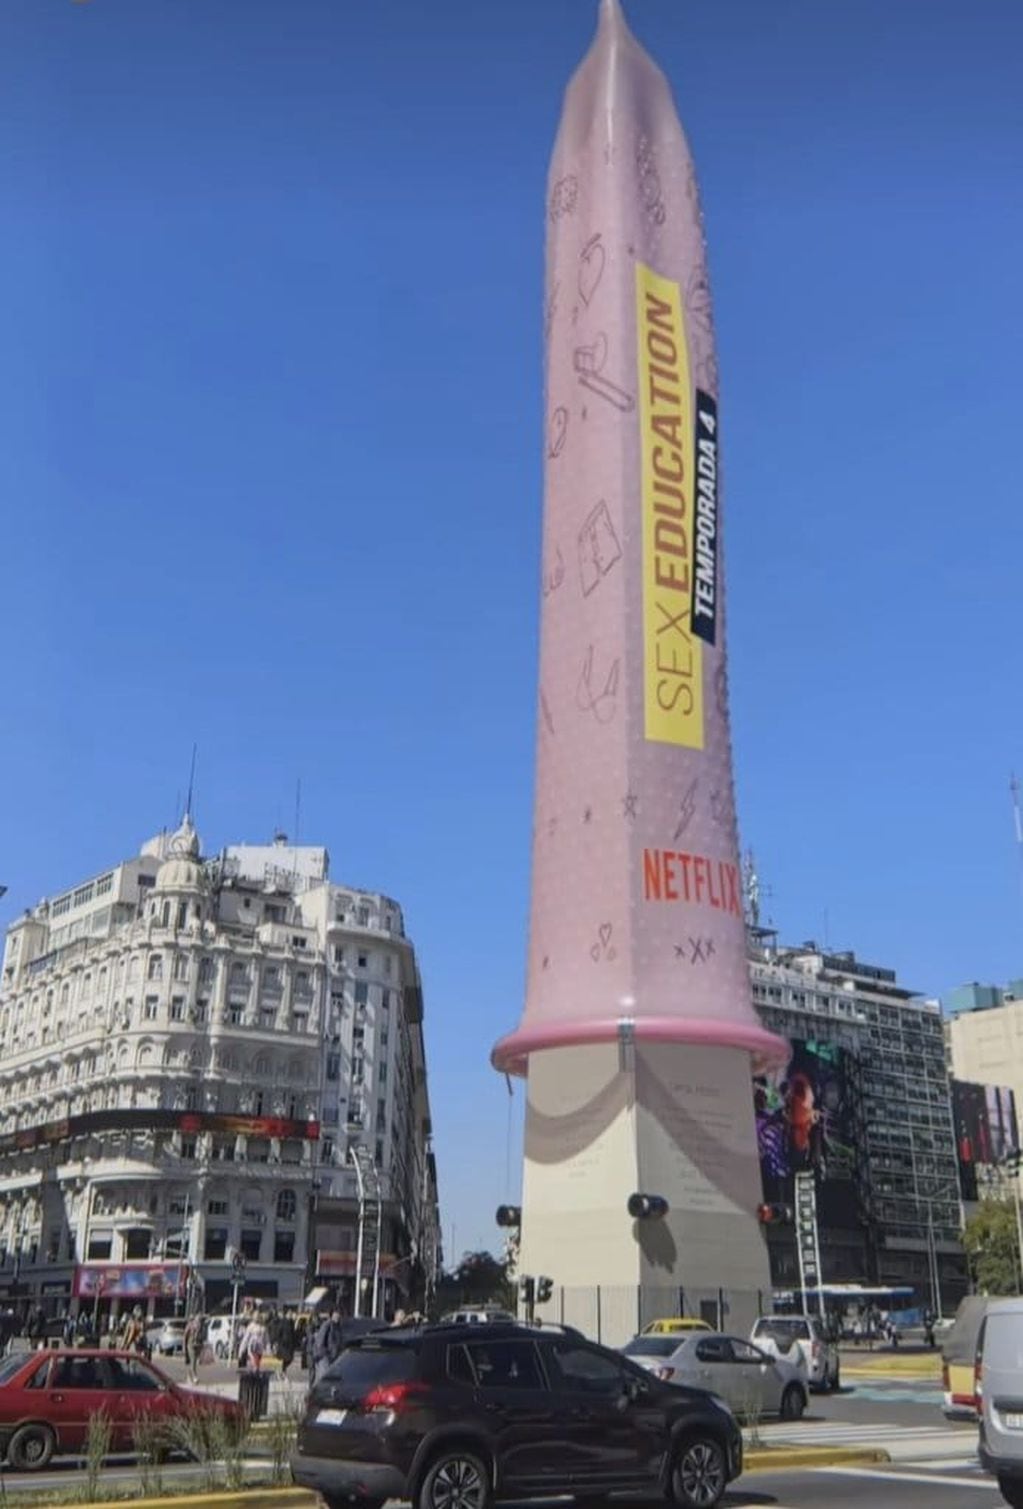 Le pusieron un preservativo gigante al obelisco, pero cabe aclarar que se trata de una animación. 